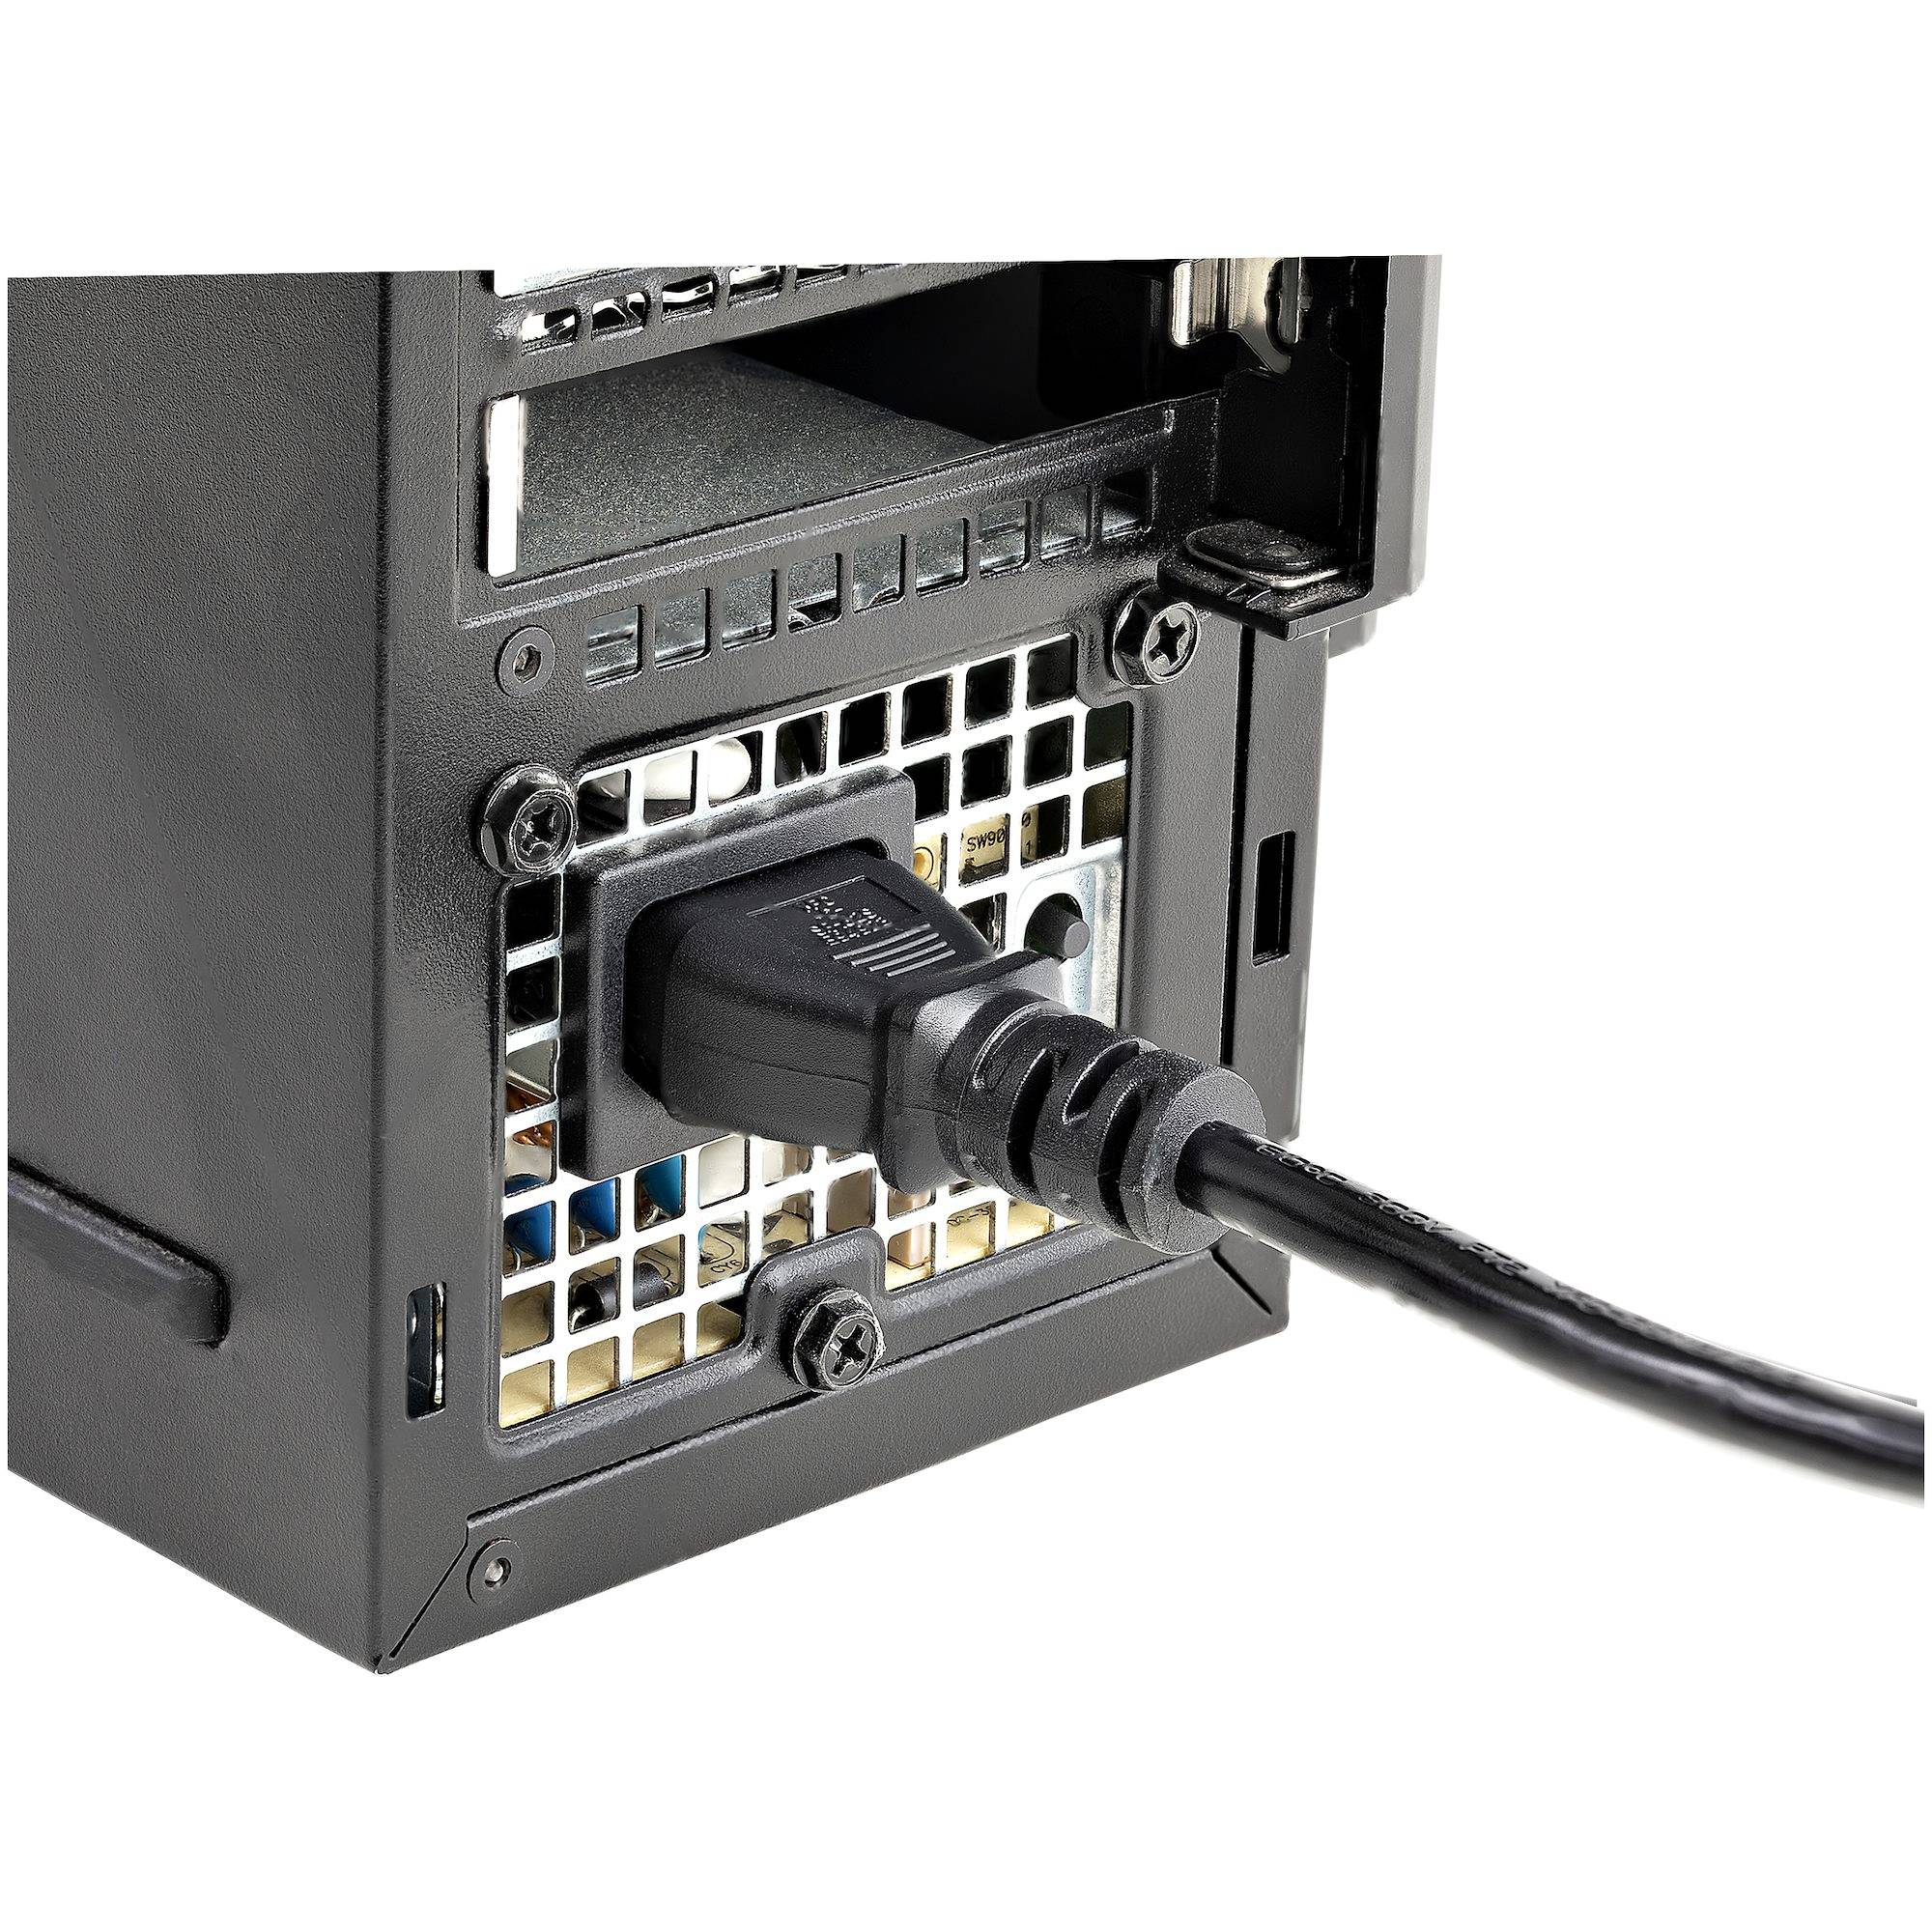 Rca Informatique - image du produit : 6 FT STANDARD COMPUTER POWER US CORD - NEMA5-15P TO C13